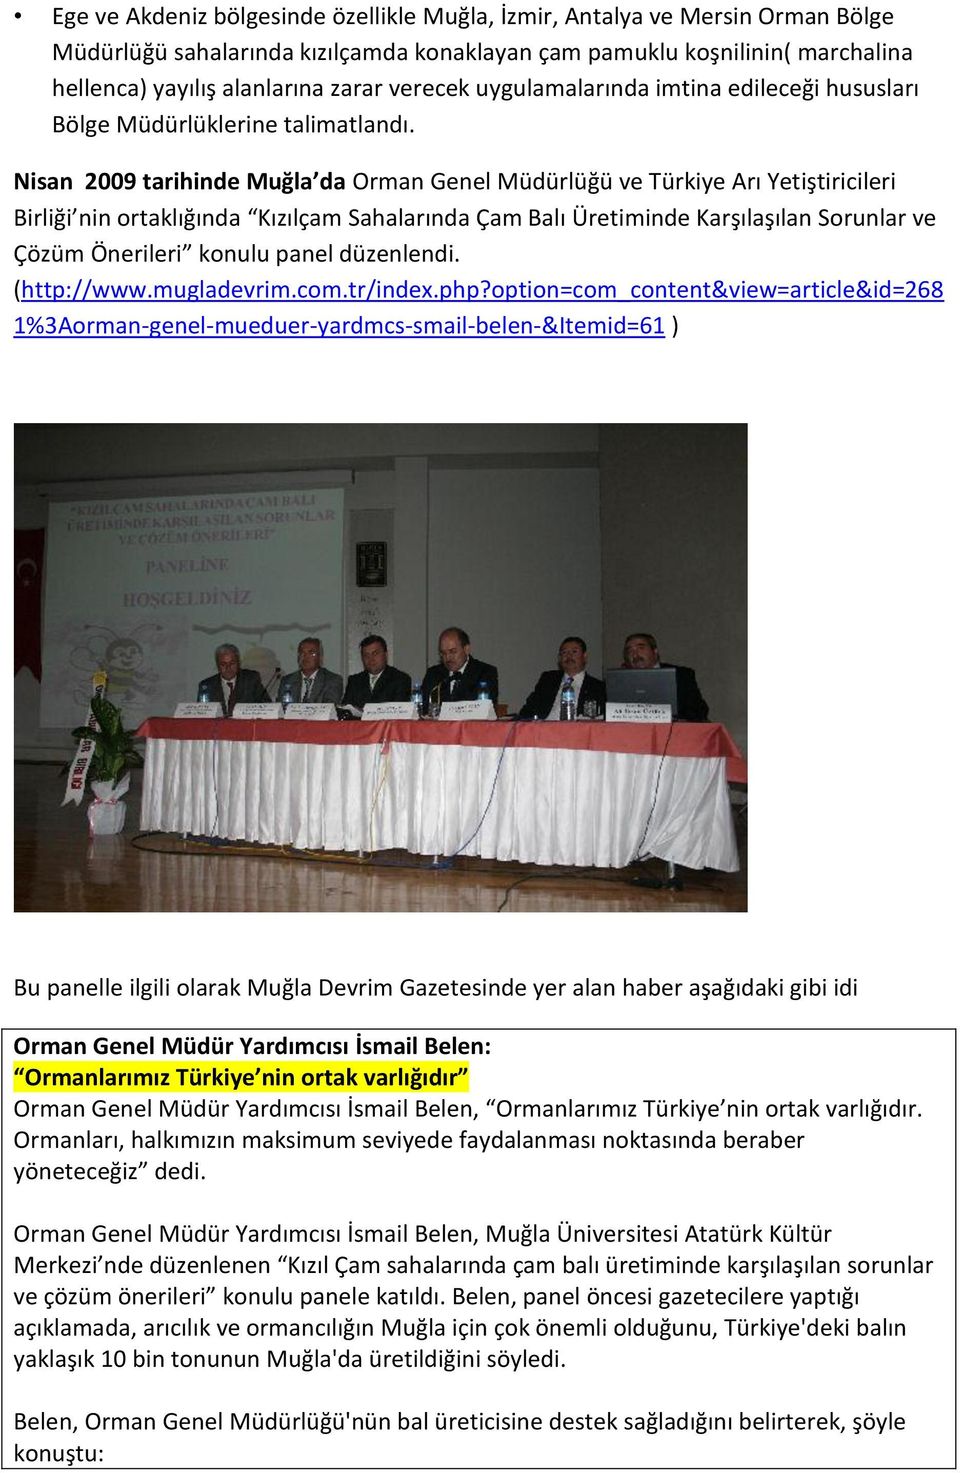 Nisan 2009 tarihinde Muğla da Orman Genel Müdürlüğü ve Türkiye Arı Yetiştiricileri Birliği nin ortaklığında Kızılçam Sahalarında Çam Balı Üretiminde Karşılaşılan Sorunlar ve Çözüm Önerileri konulu